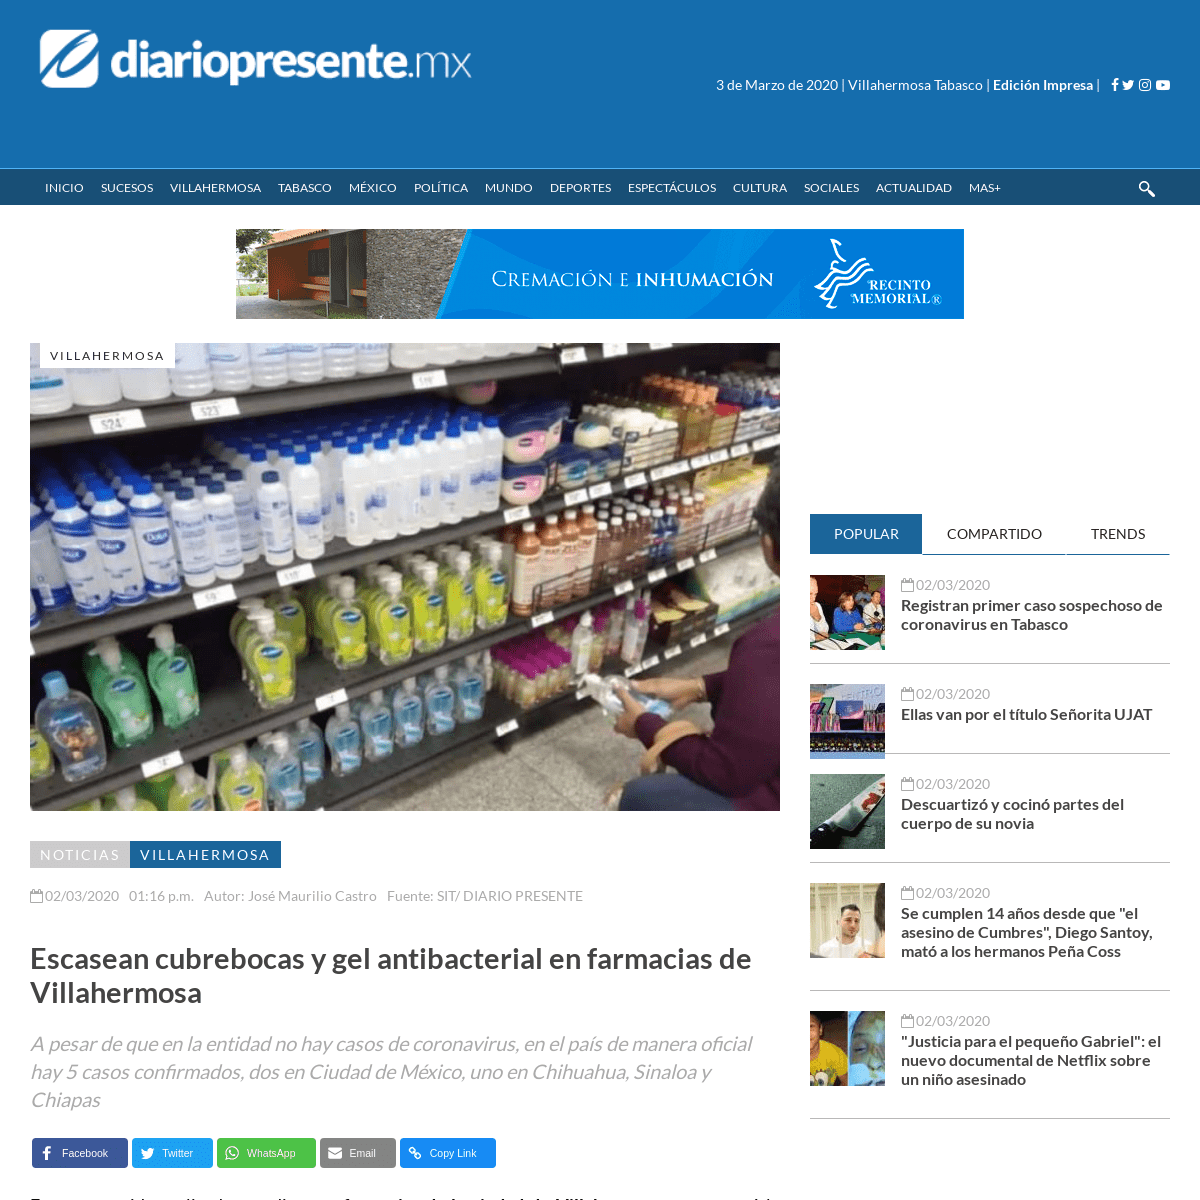 A complete backup of www.diariopresente.mx/villahermosa/escasean-cubrebocas-y-gel-antibacterial-en-farmacias-de-villahermosa/251